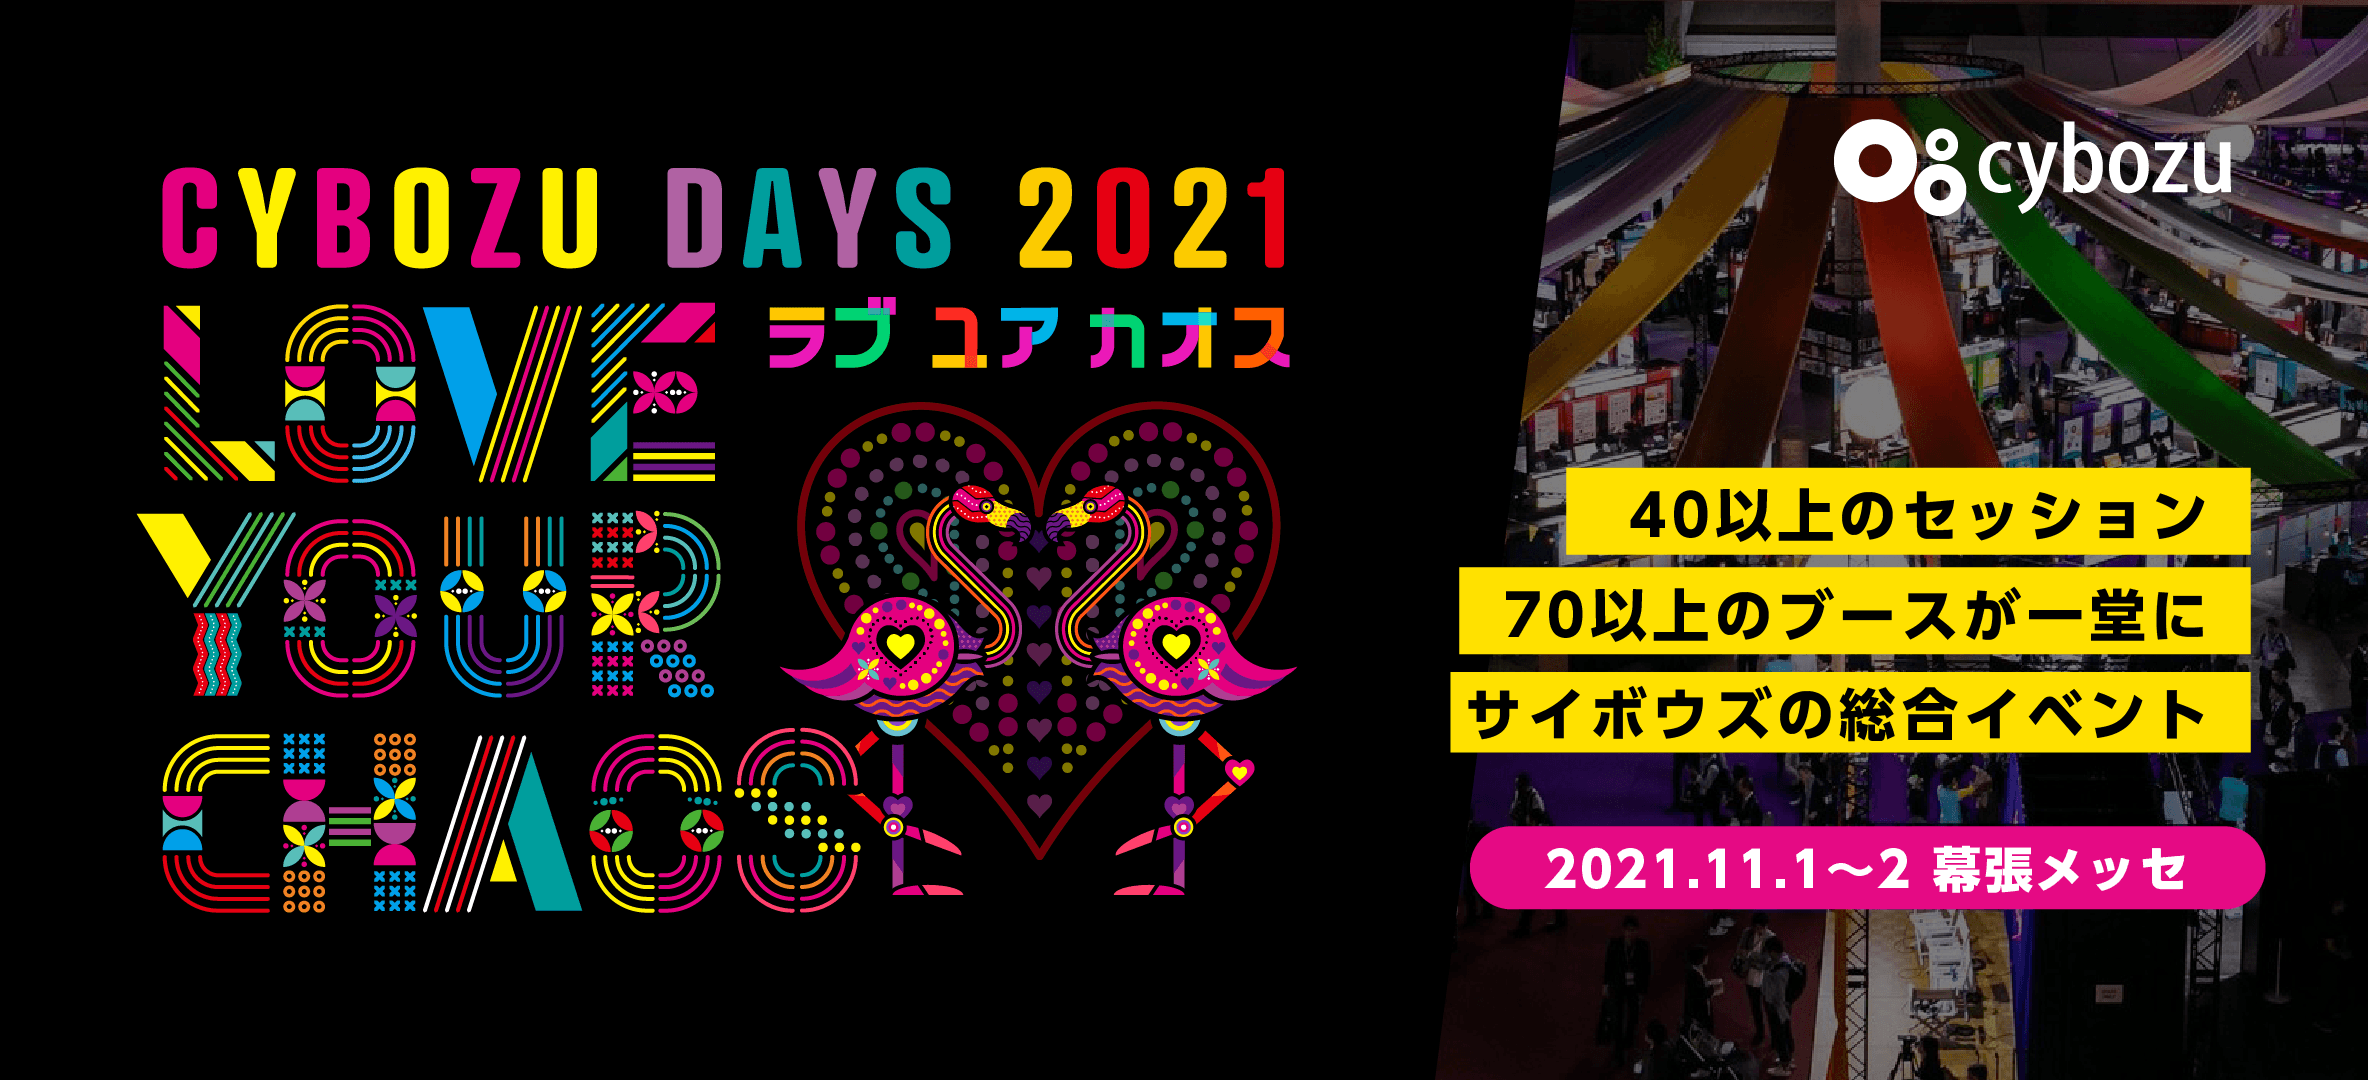 【11月1日(月)-2日(火)開催】「Cybozu Days 2021」に契約書管理 on kintoneを出展しています！